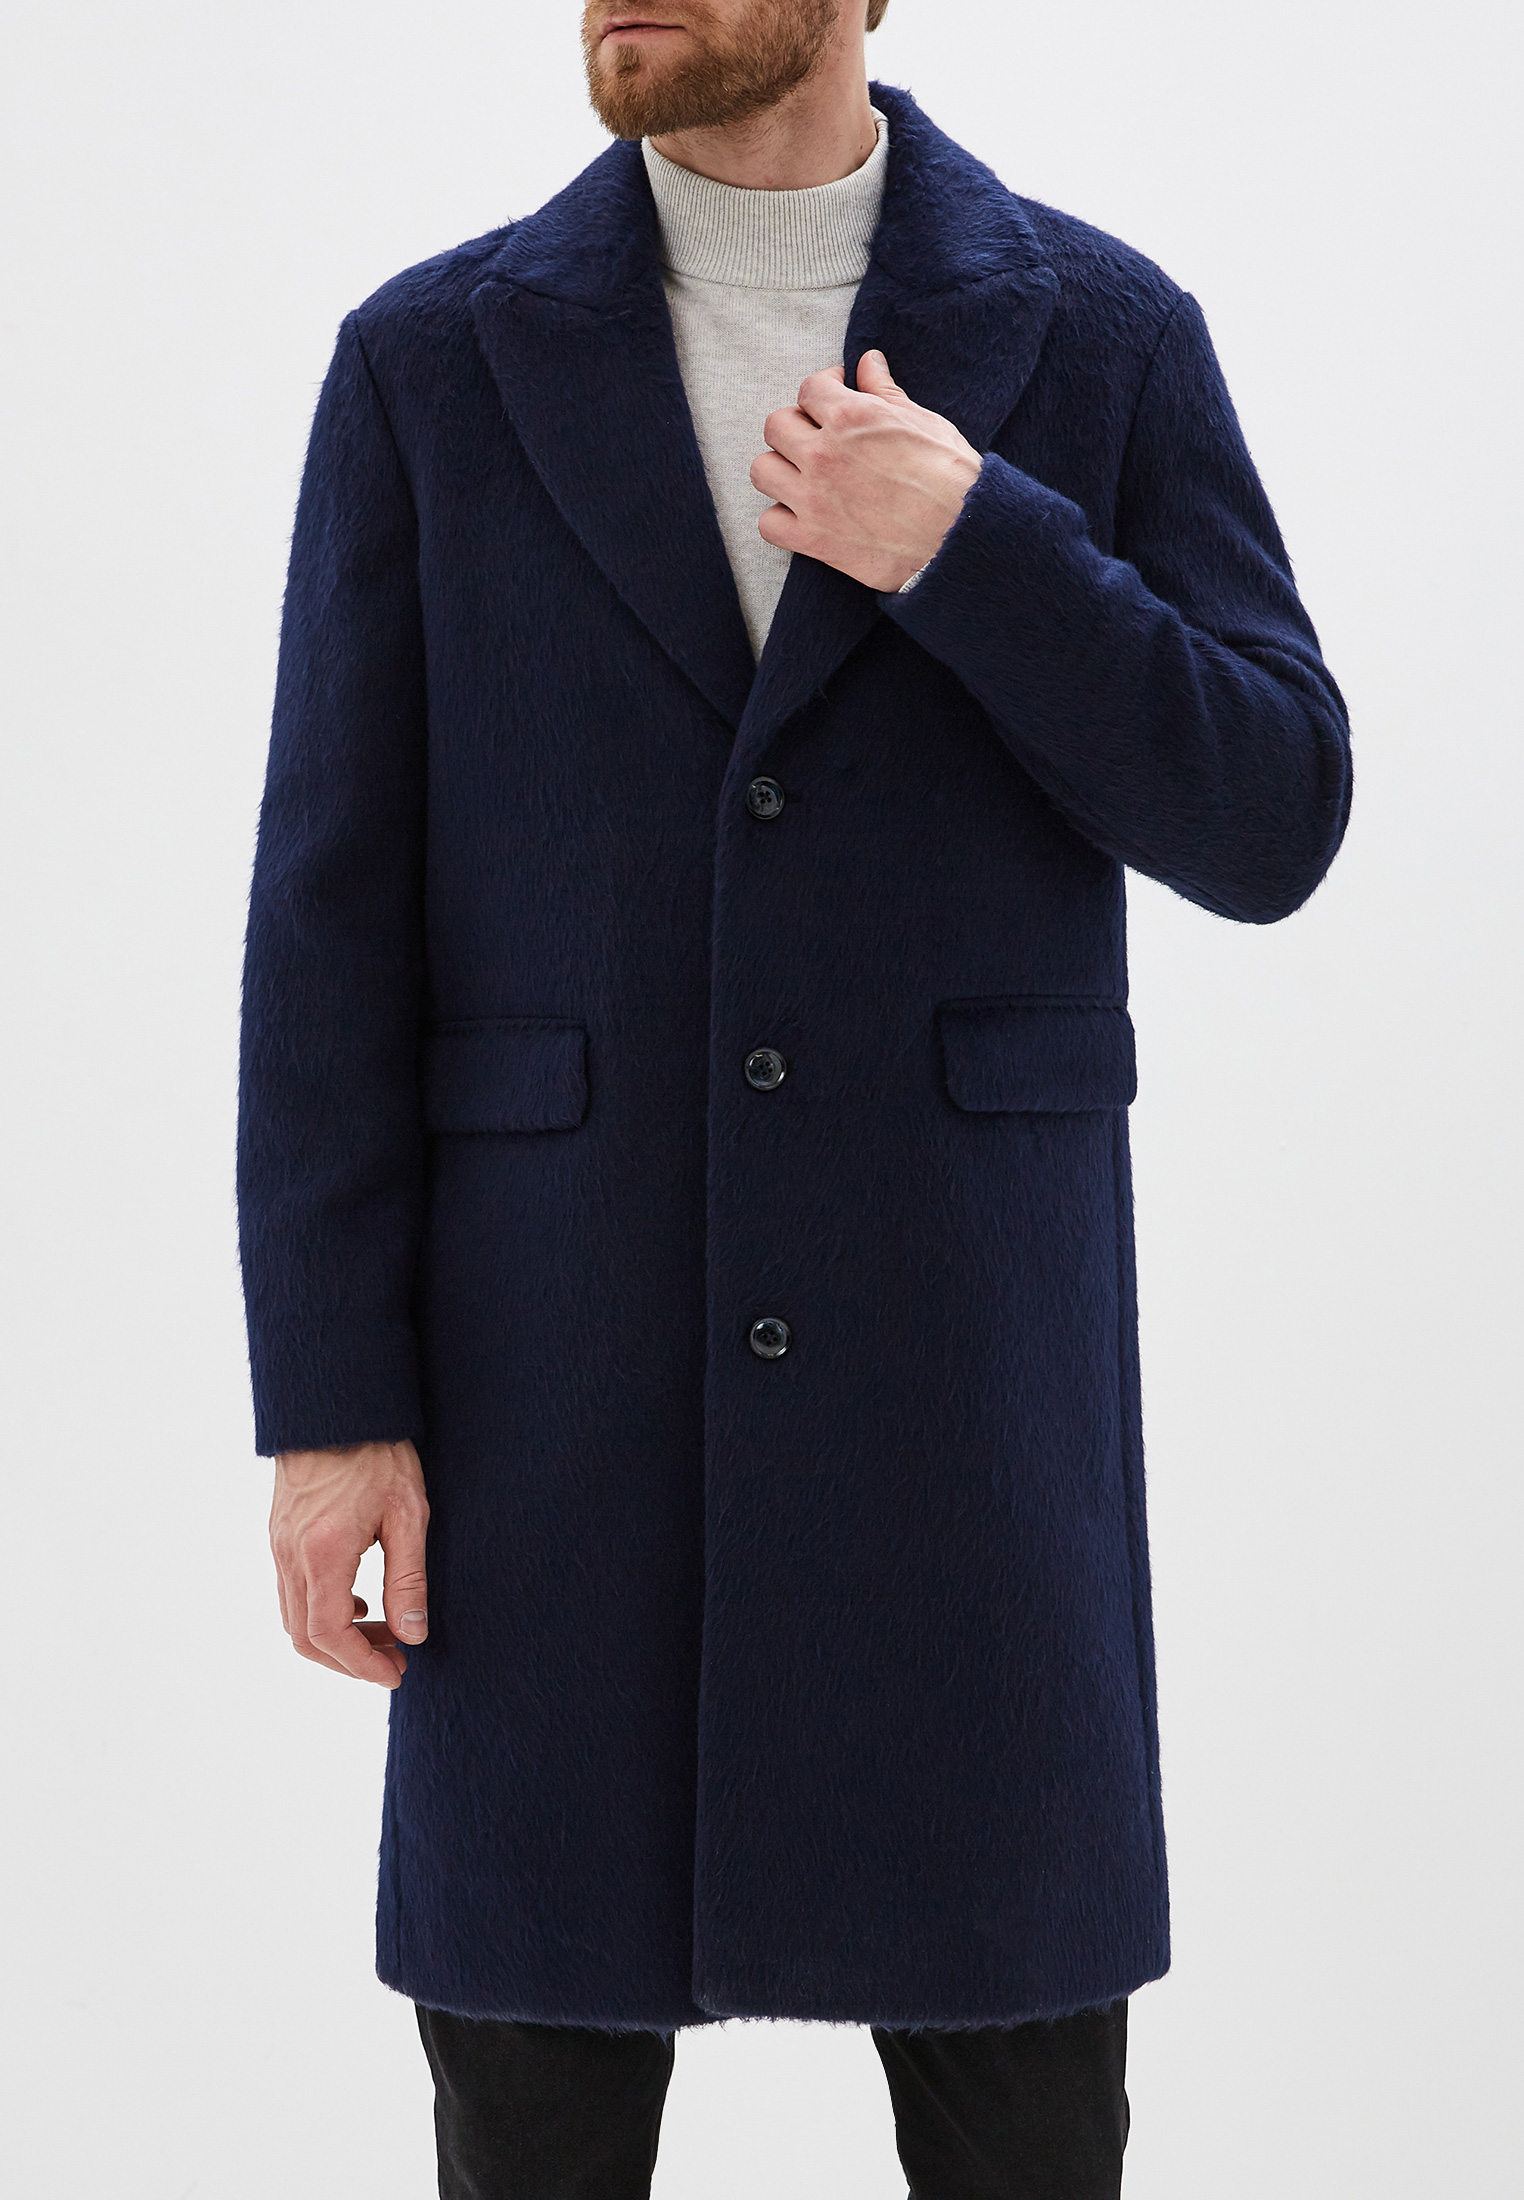 Вайлдберриз пальто мужское. 2bda5k2h9 Sisley пальто мужское. Шерстяное пальто Sisley. Sisley пальто мужское синее. Joop! 66025 Пальто мужское шерстяное.